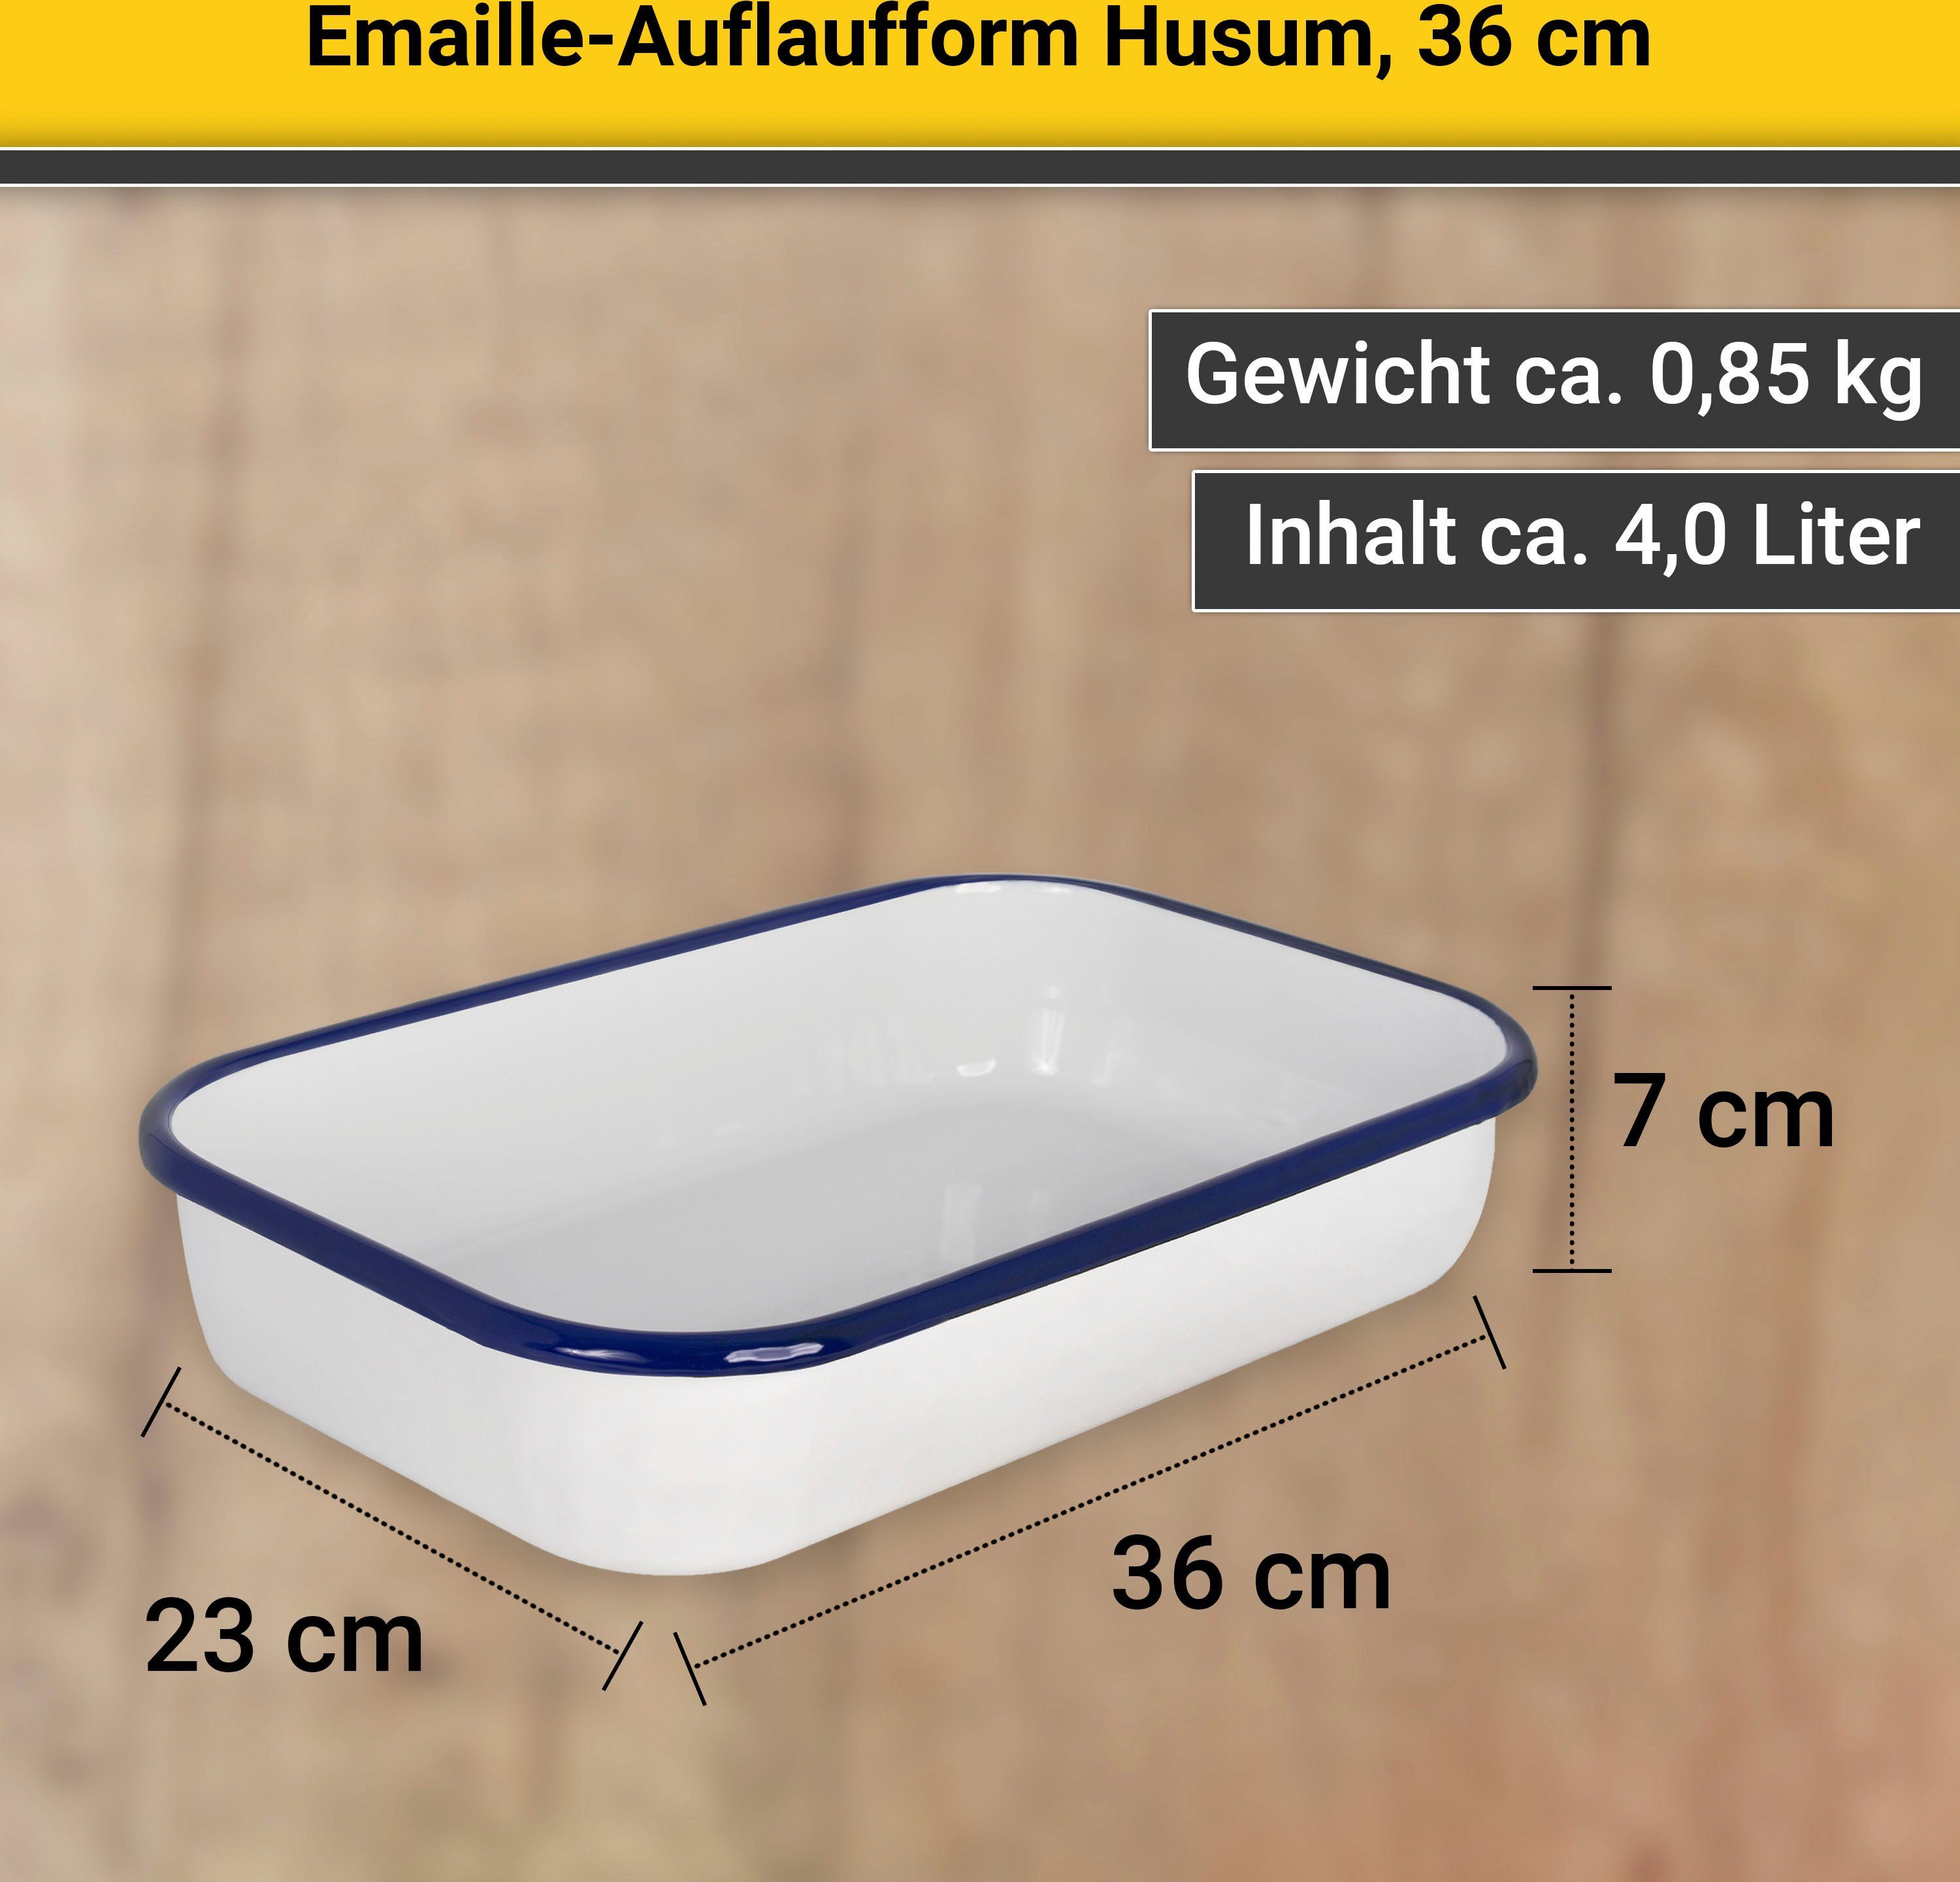 cm Krüger Auflaufform 36 Emaille, Husum,